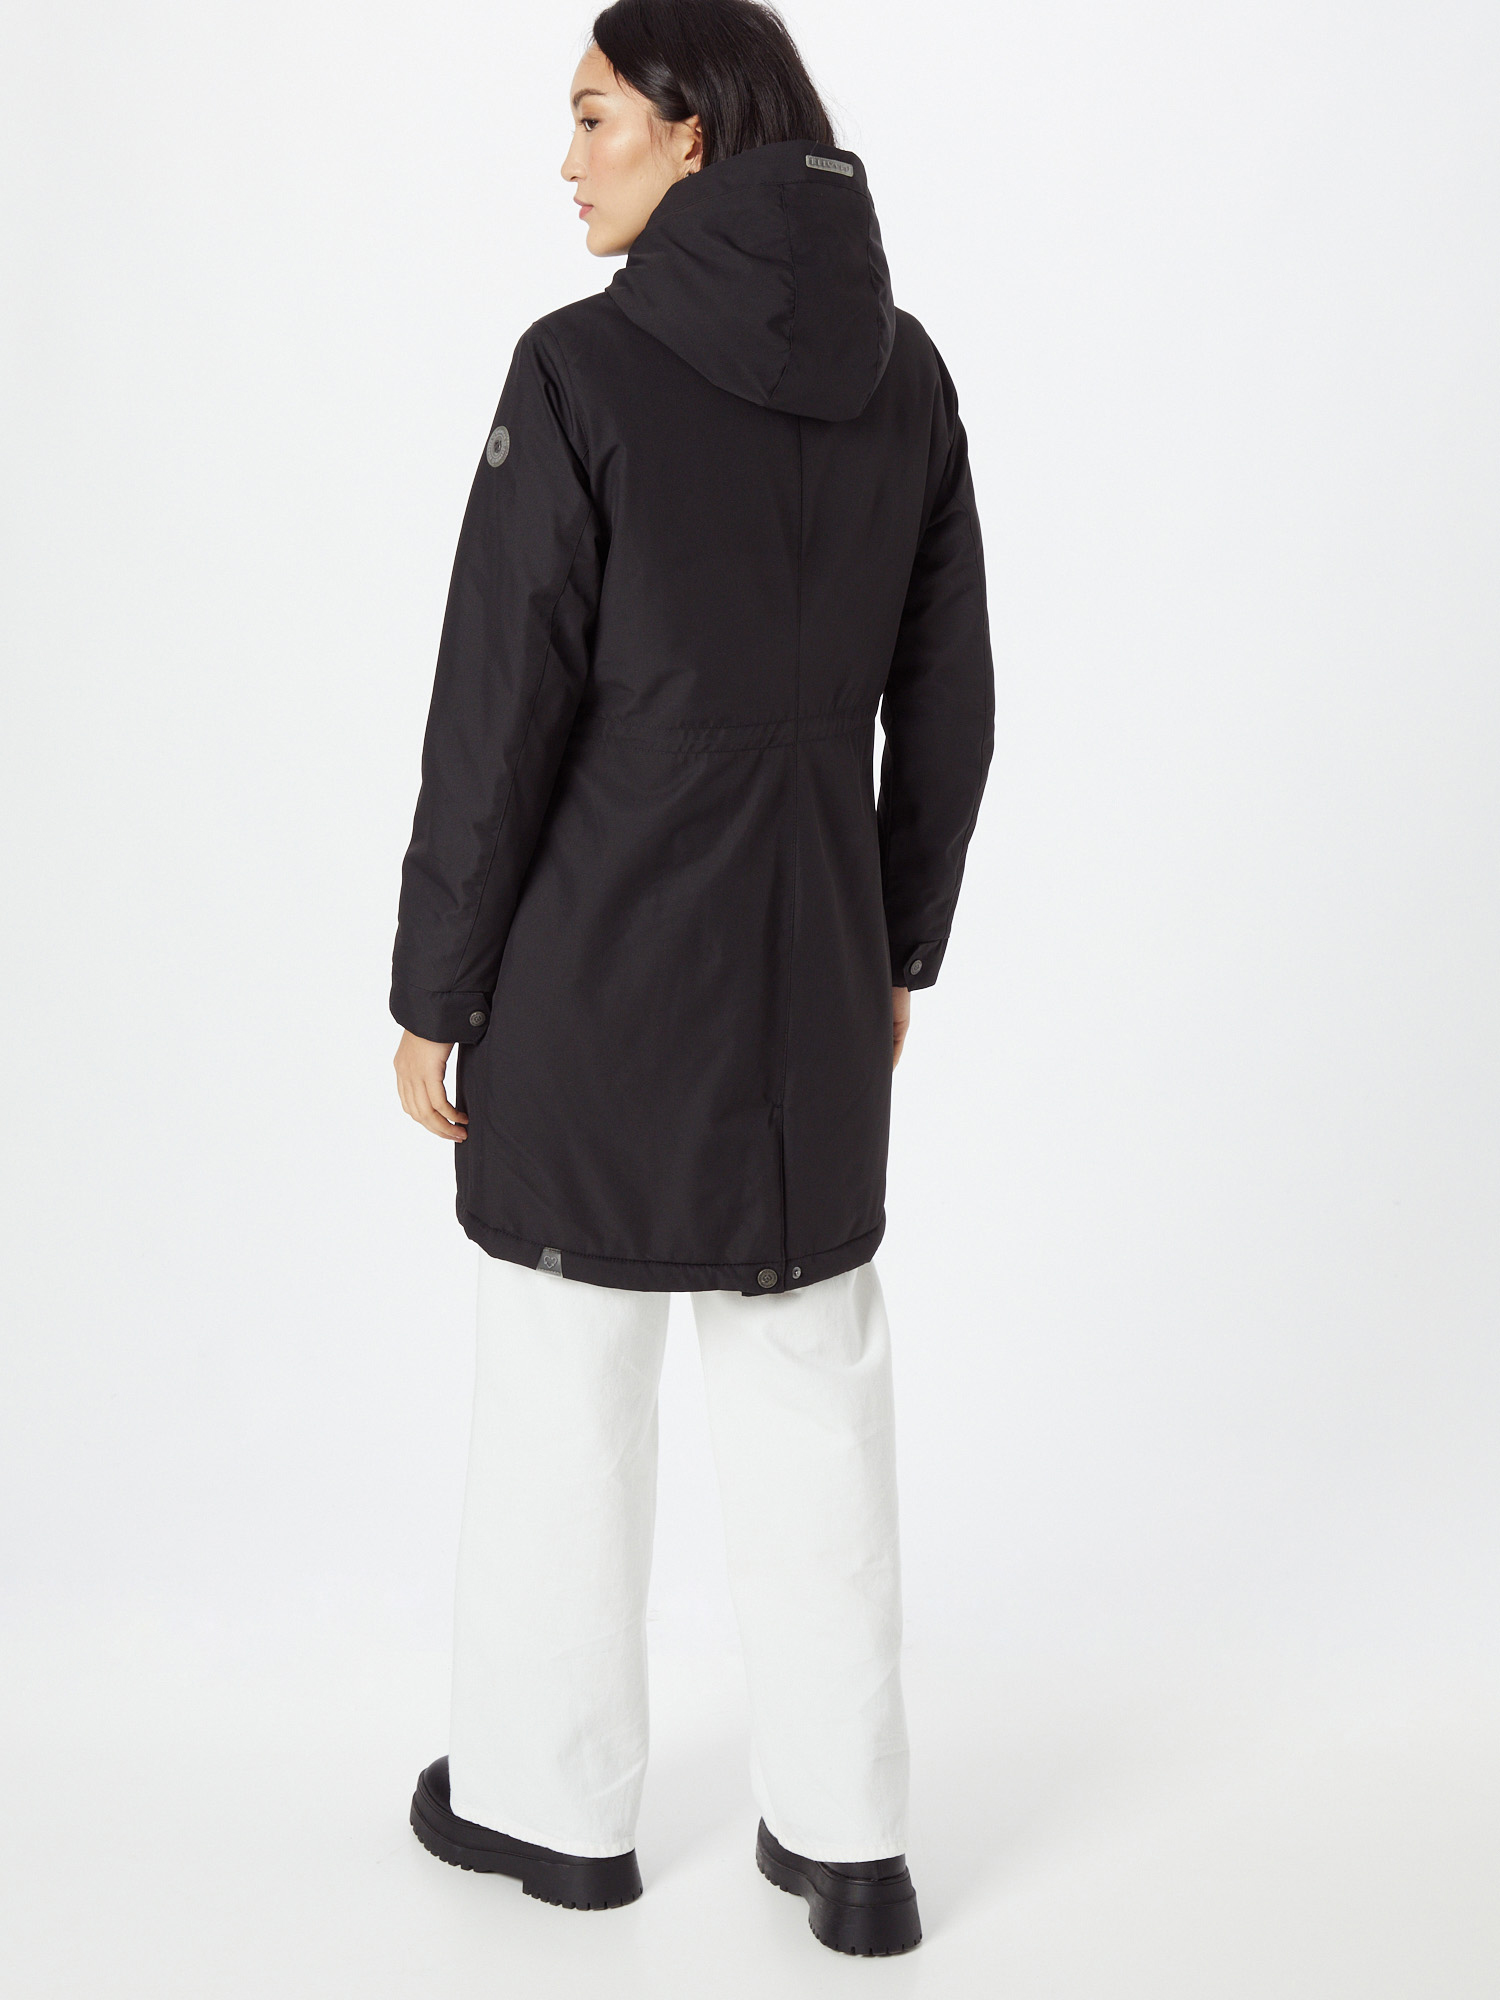 Kobiety Odzież Ragwear Parka zimowa RELOVED REMAKE w kolorze Czarnym 